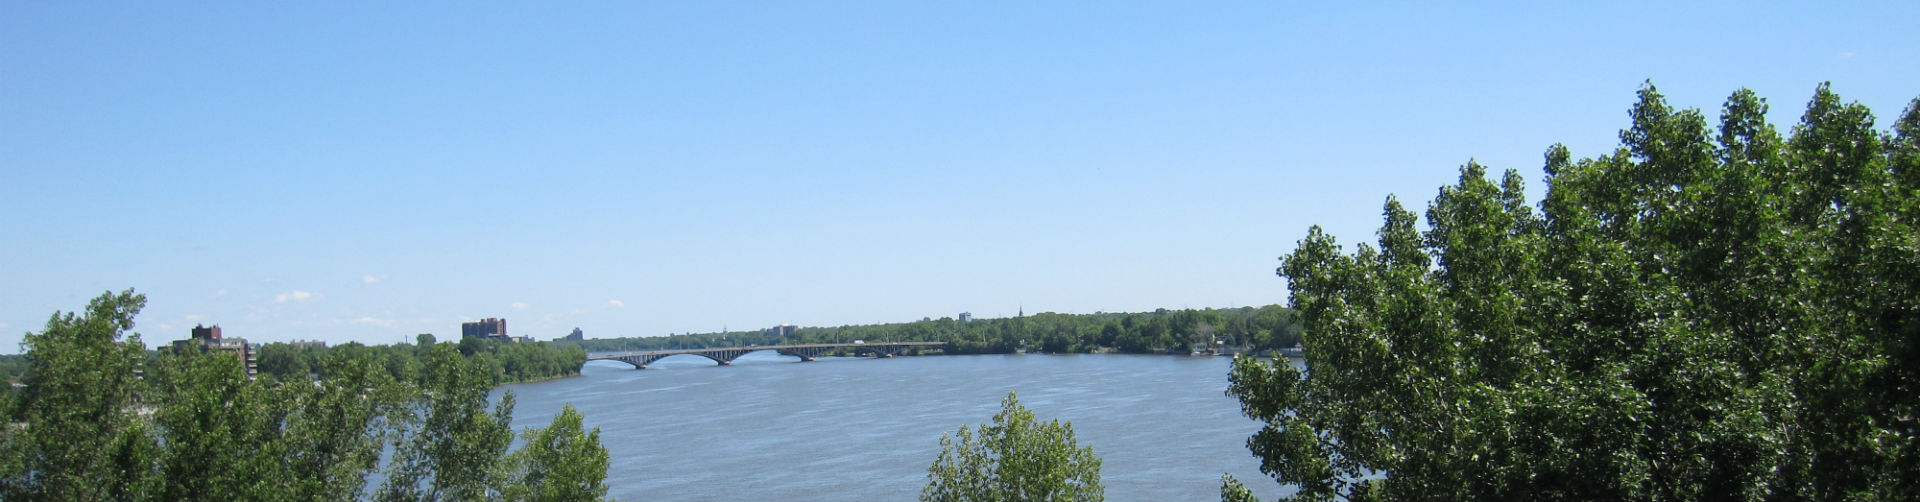 Rivière des Prairies